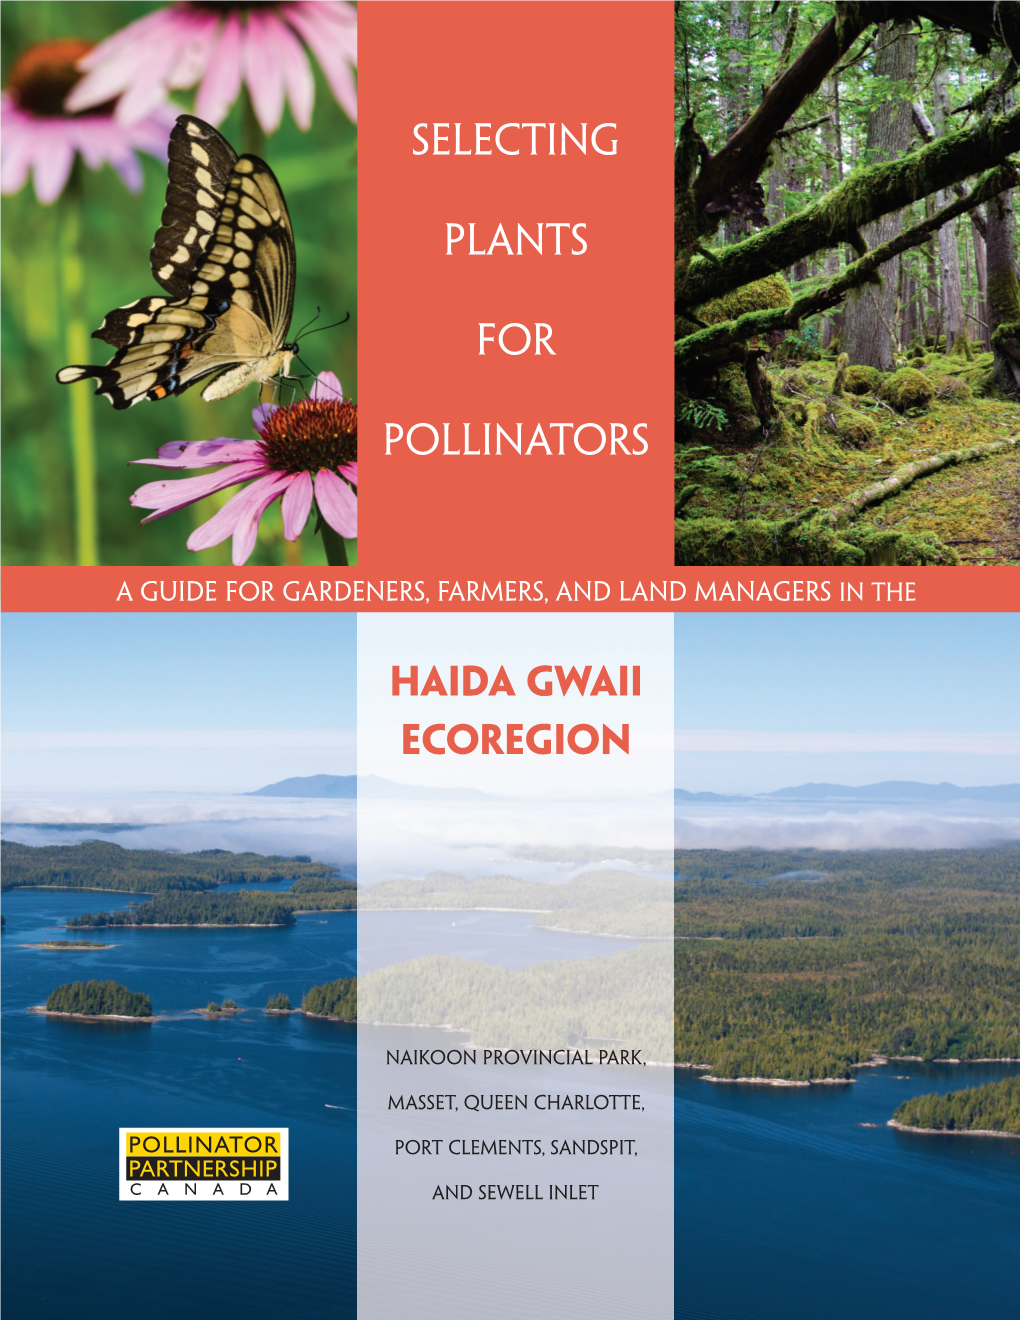 Haida Gwaii Ecoregion